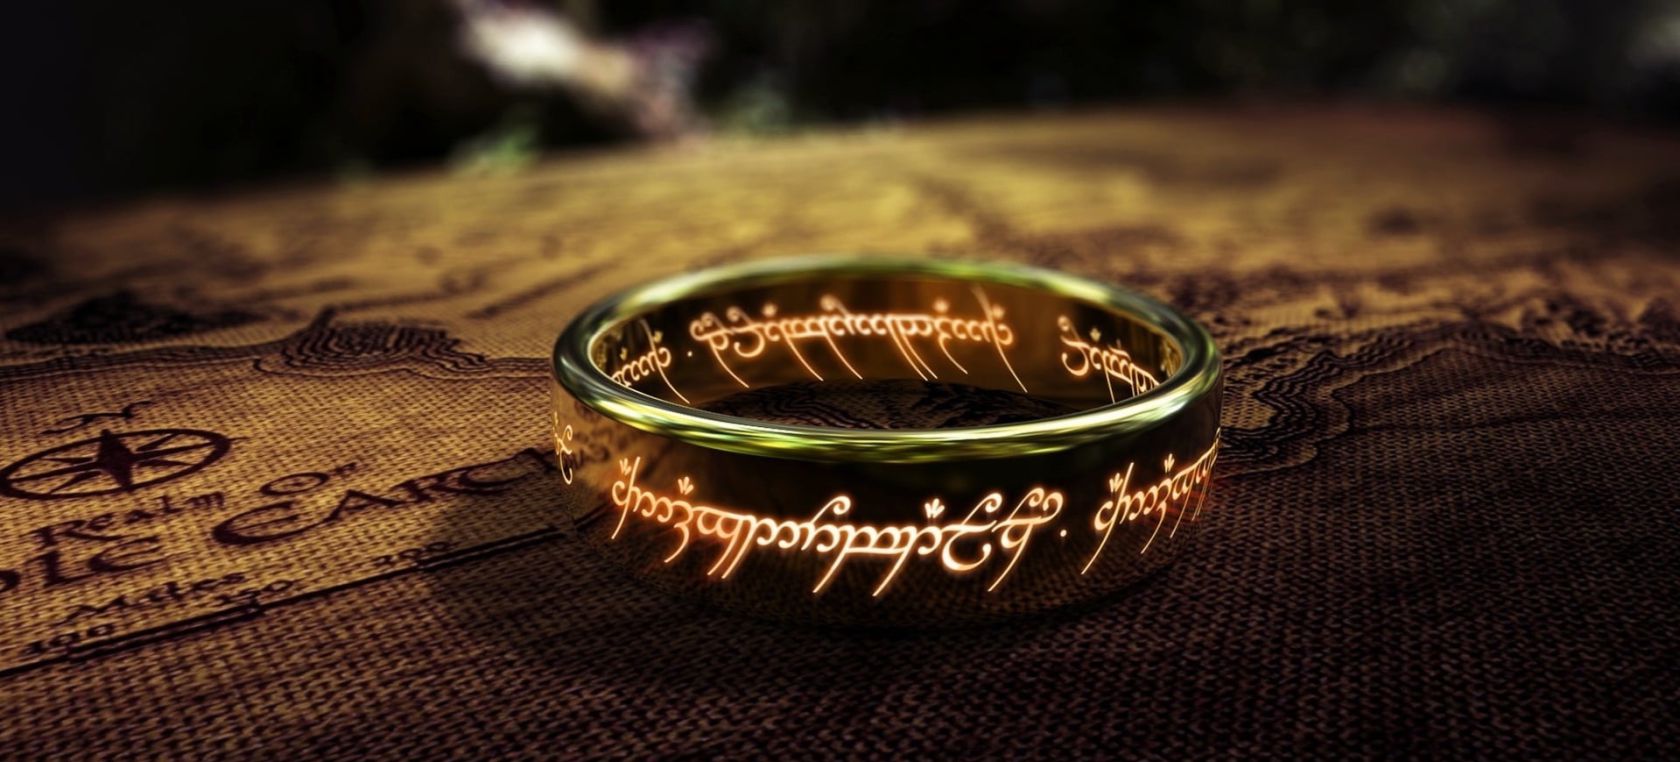 Nuevos detalles sobre la serie de ‘El señor de los anillos’: todo lo que debes saber hasta hoy